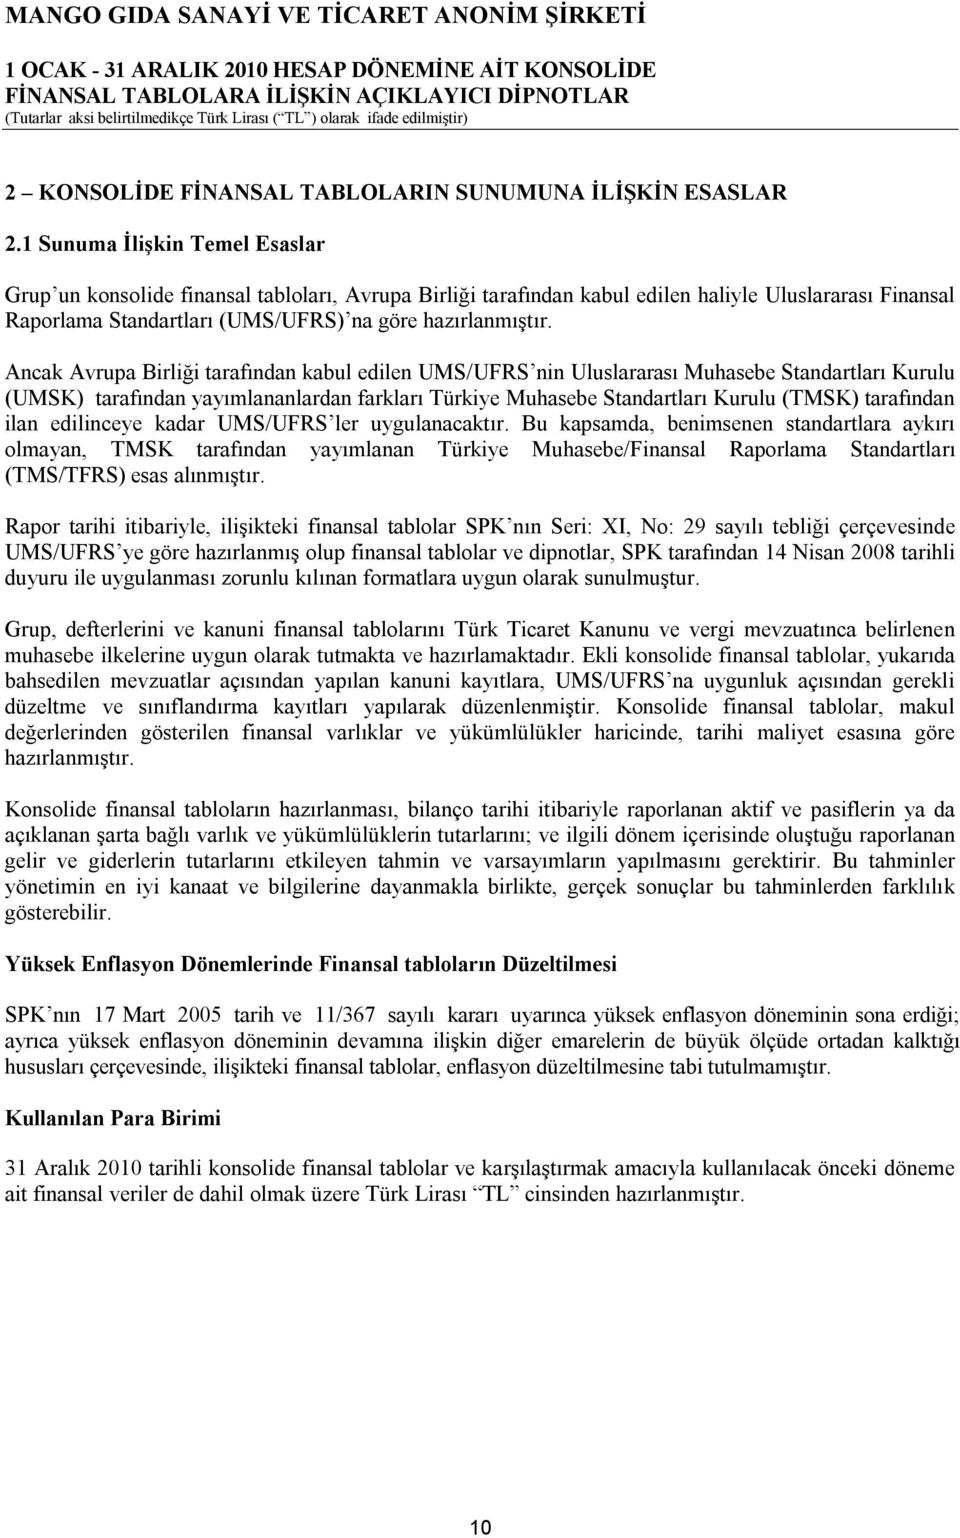 Ancak Avrupa Birliği tarafından kabul edilen UMS/UFRS nin Uluslararası Muhasebe Standartları Kurulu (UMSK) tarafından yayımlananlardan farkları Türkiye Muhasebe Standartları Kurulu (TMSK) tarafından